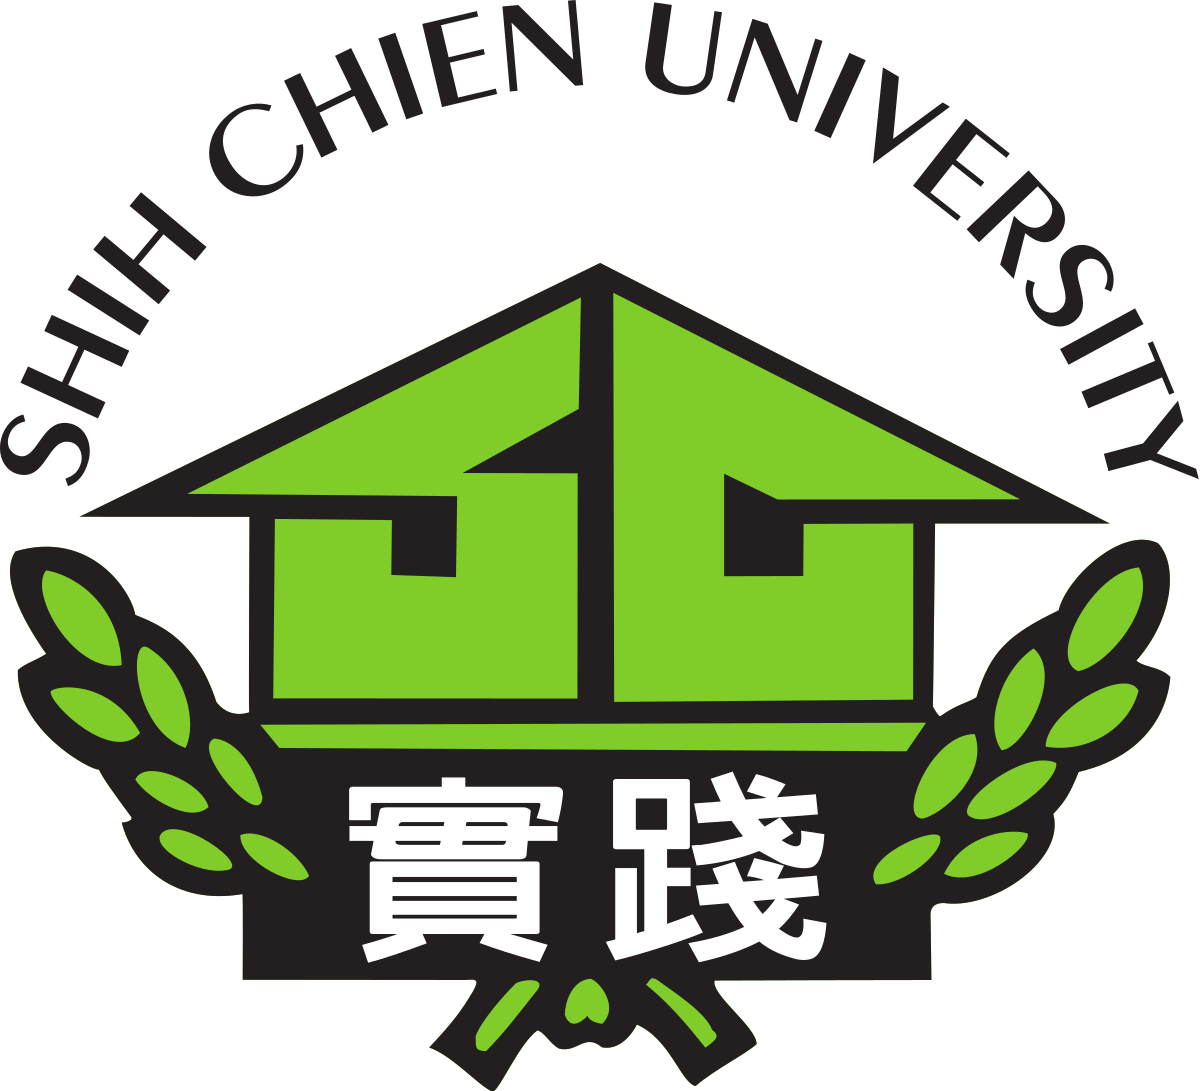 描述: C:\Users\user-pc\Desktop\Shih_Chien_University_logo.svg.png